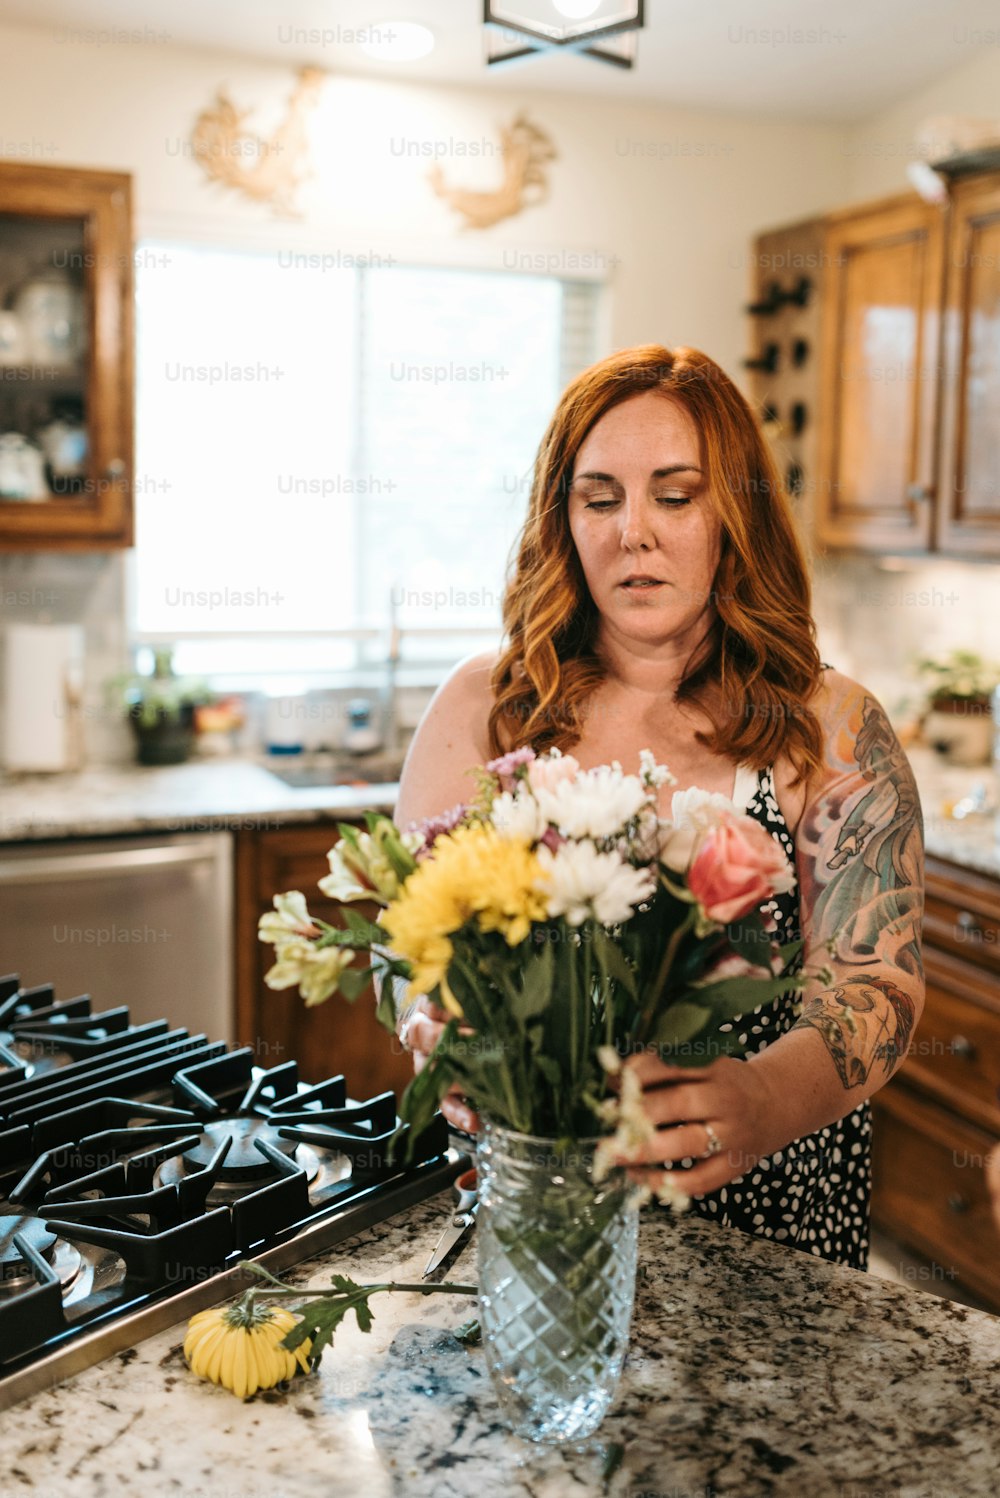 Una donna in piedi in una cucina con in mano un vaso di fiori